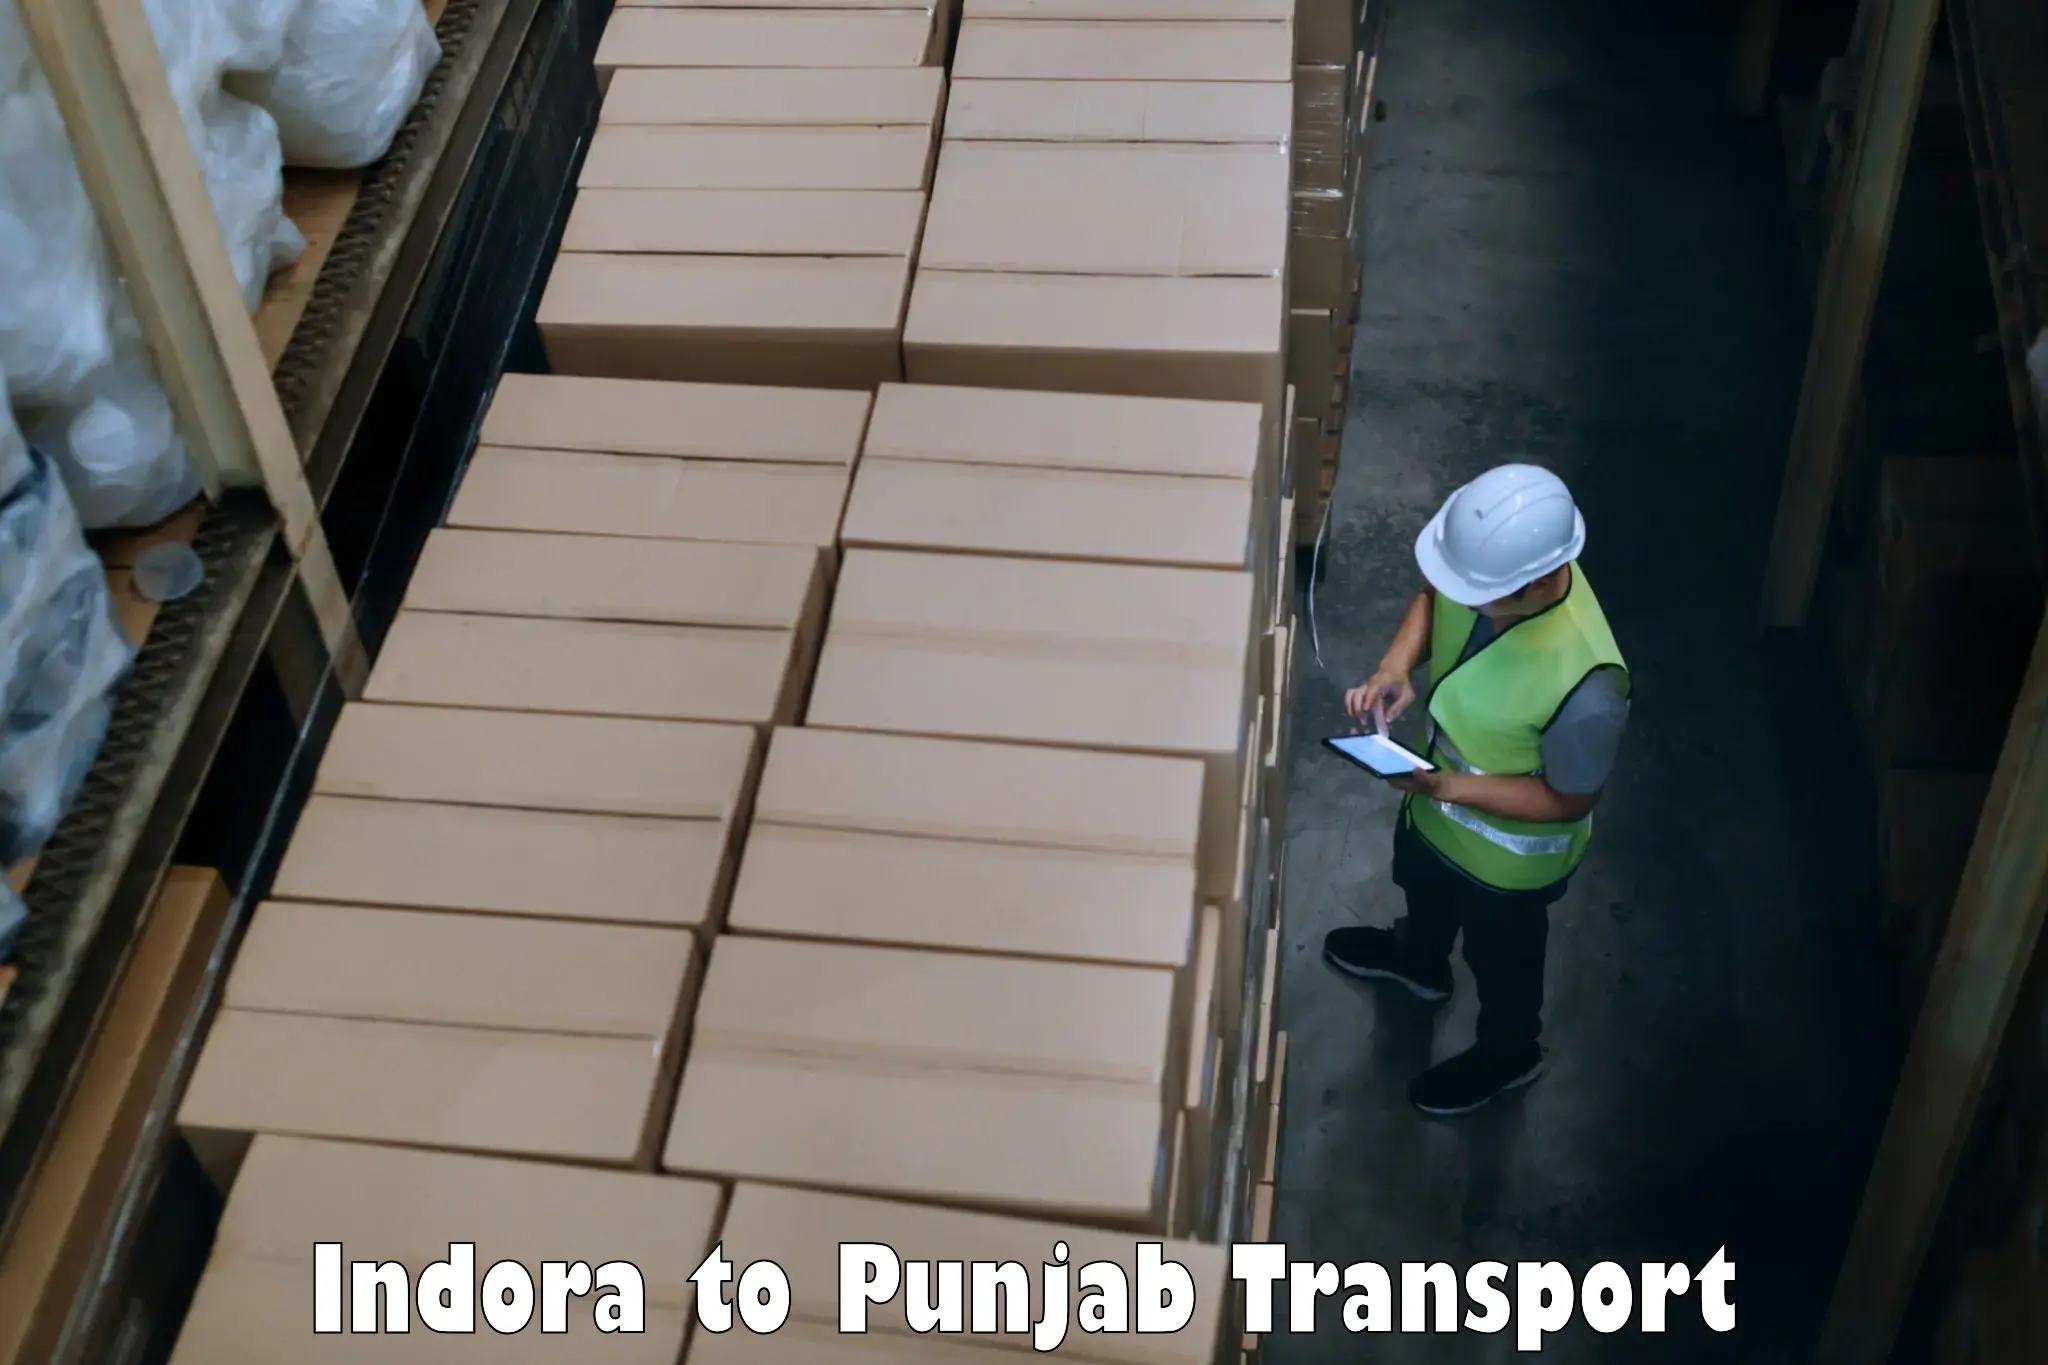 Two wheeler parcel service Indora to Punjab